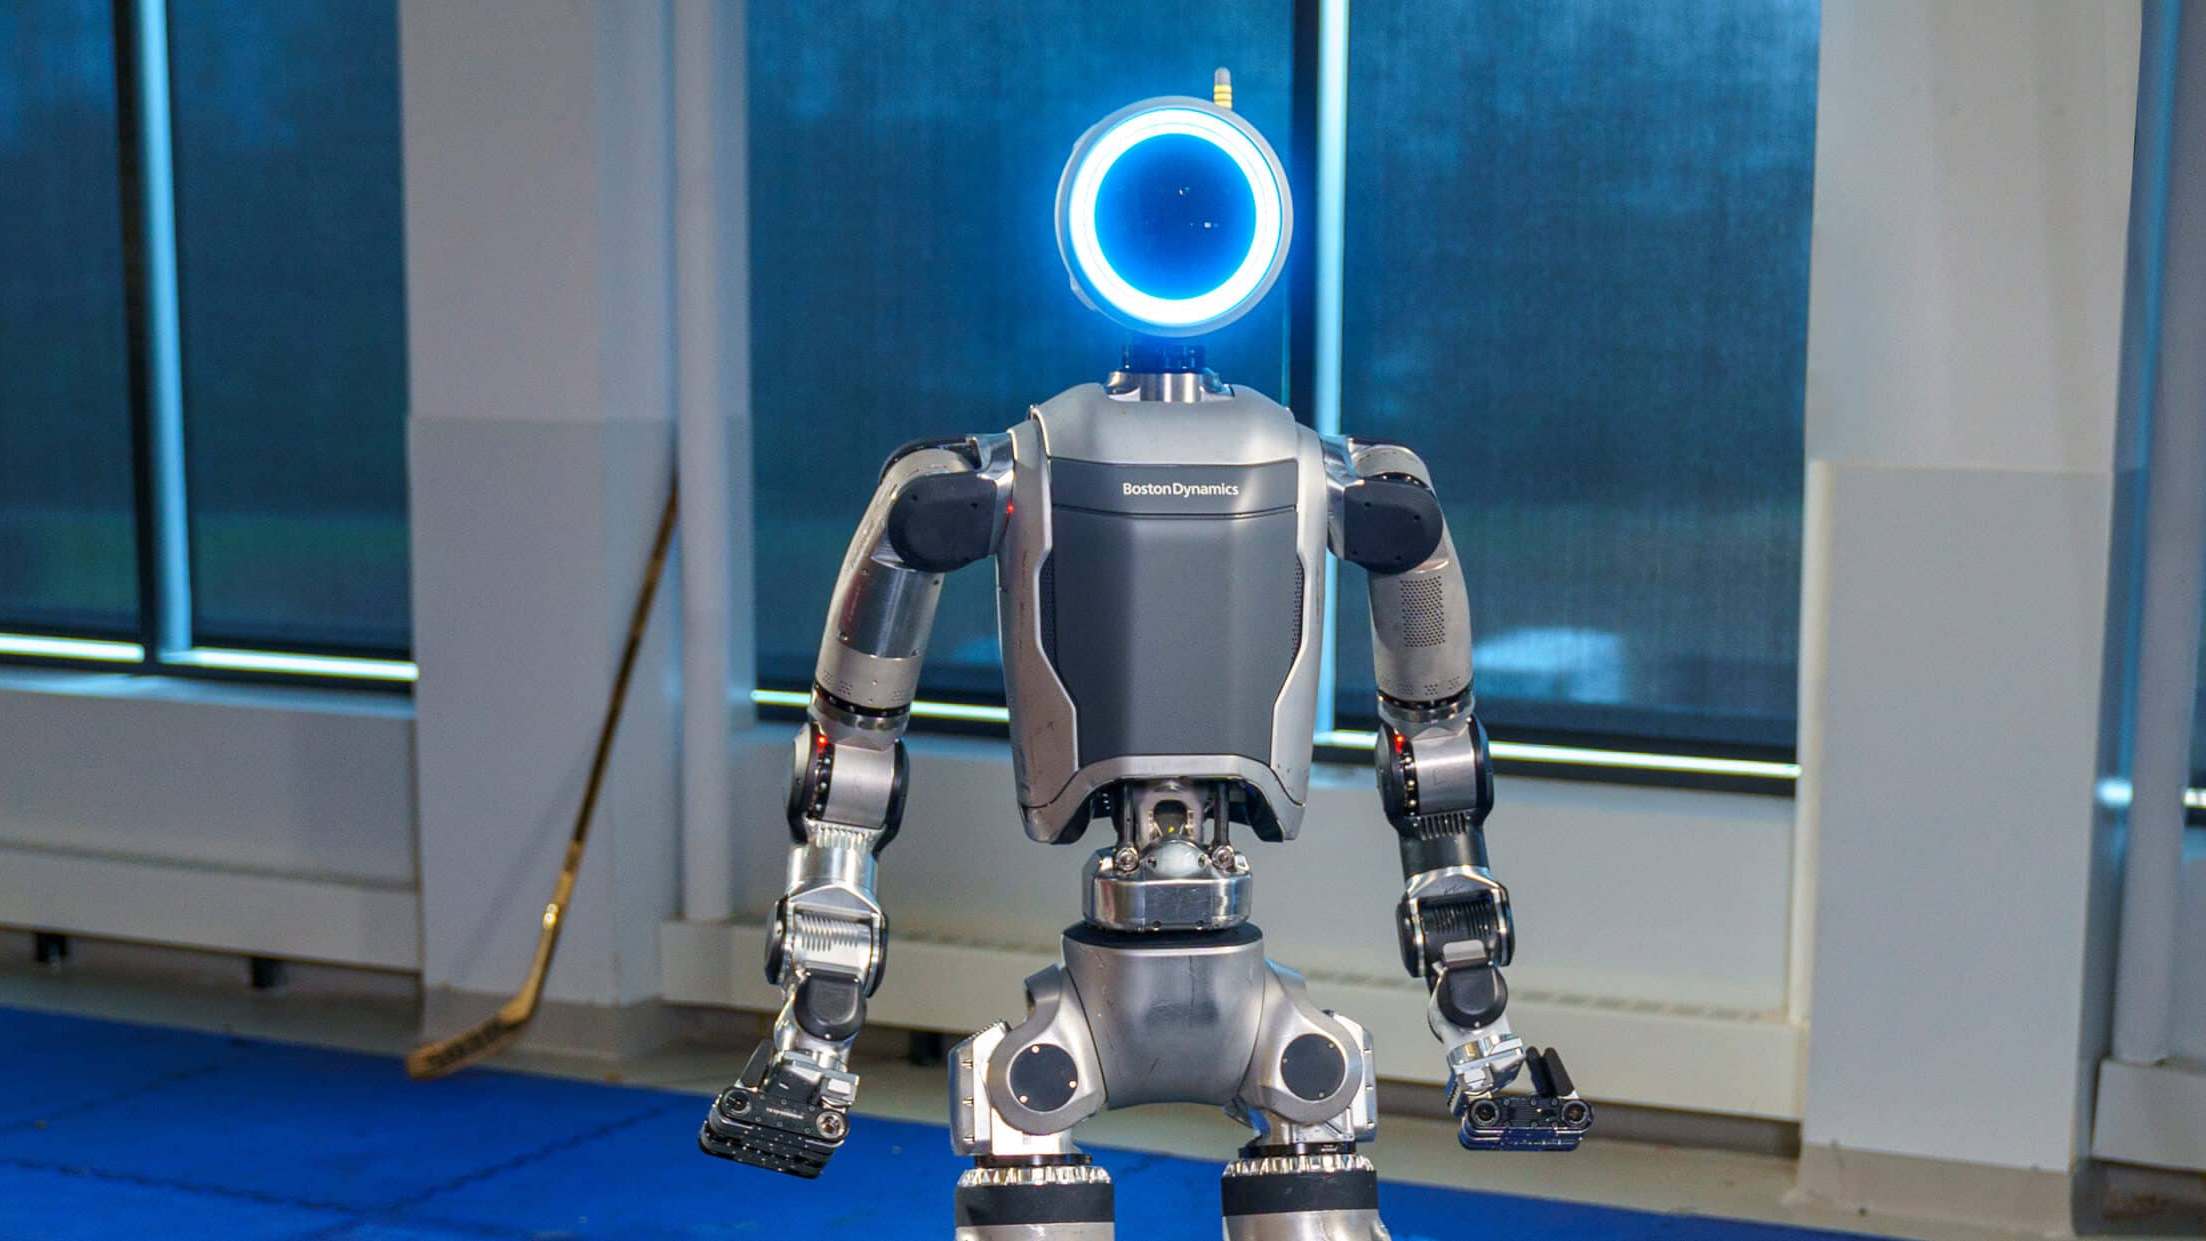 Conoce a Atlas el innovador robot impulsado por inteligencia artificial